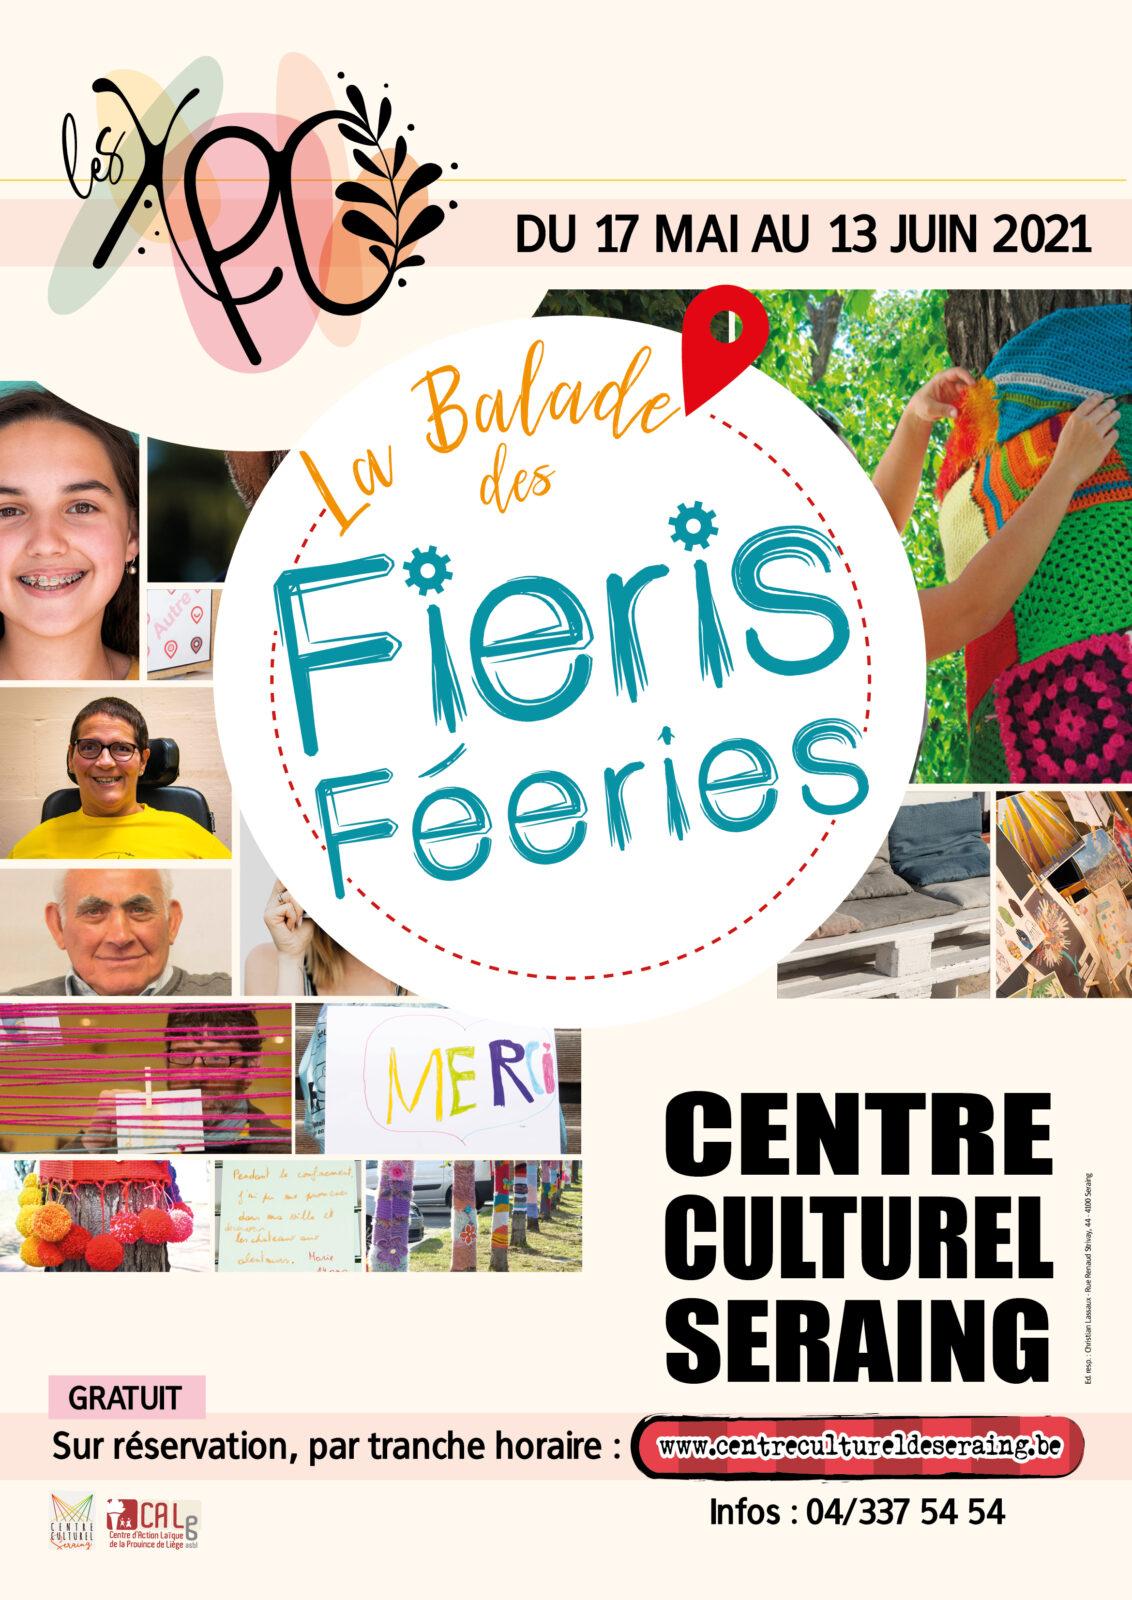 Le Centre Culturel organise une expo sur les Fieris Féeries